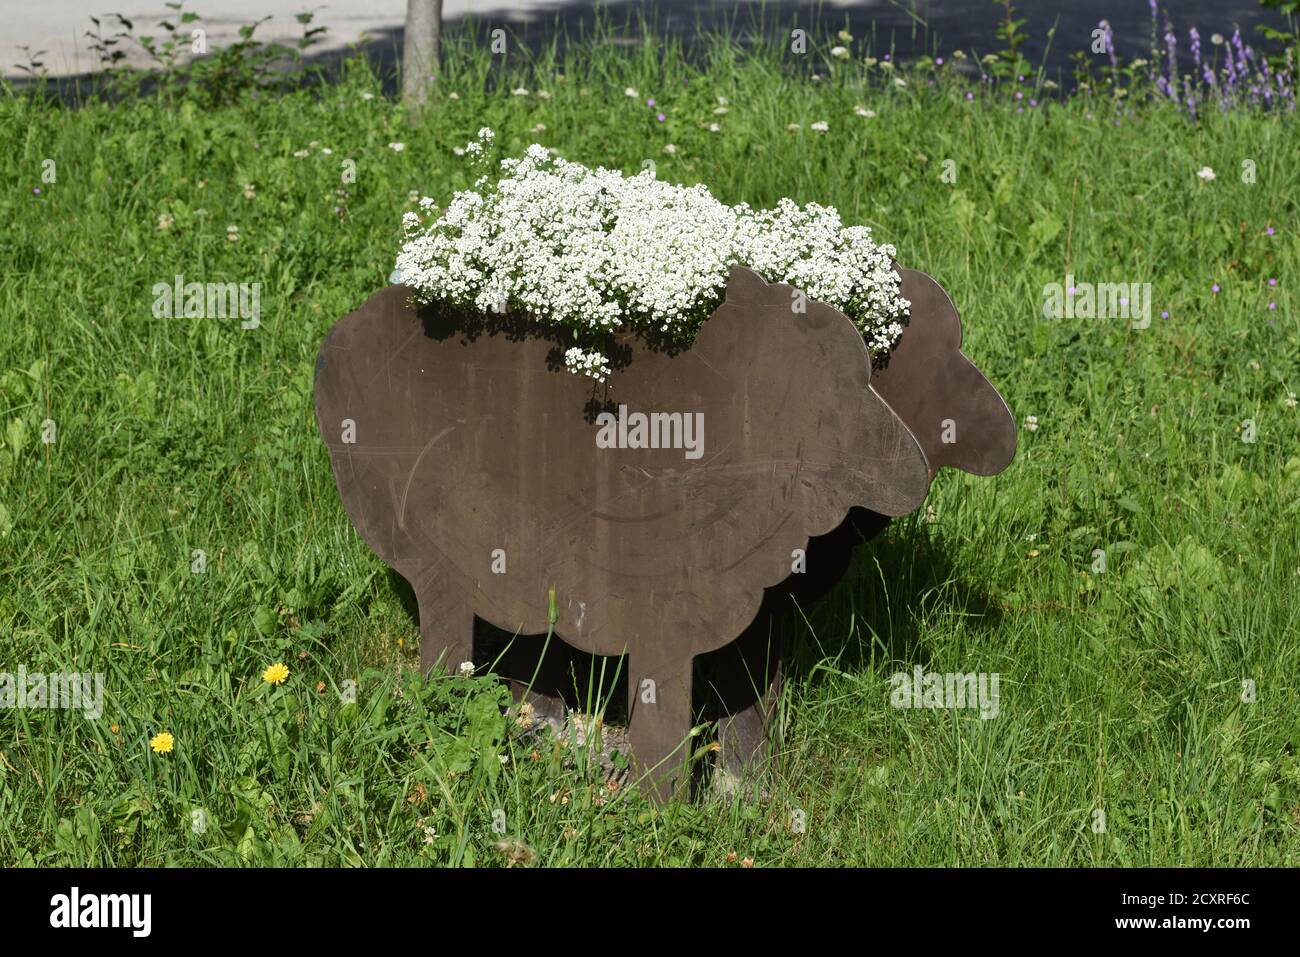 Jardinière en métal en forme de mouton avec fleurs blanches représentant les molletonnés ou les moutons Laine Banque D'Images